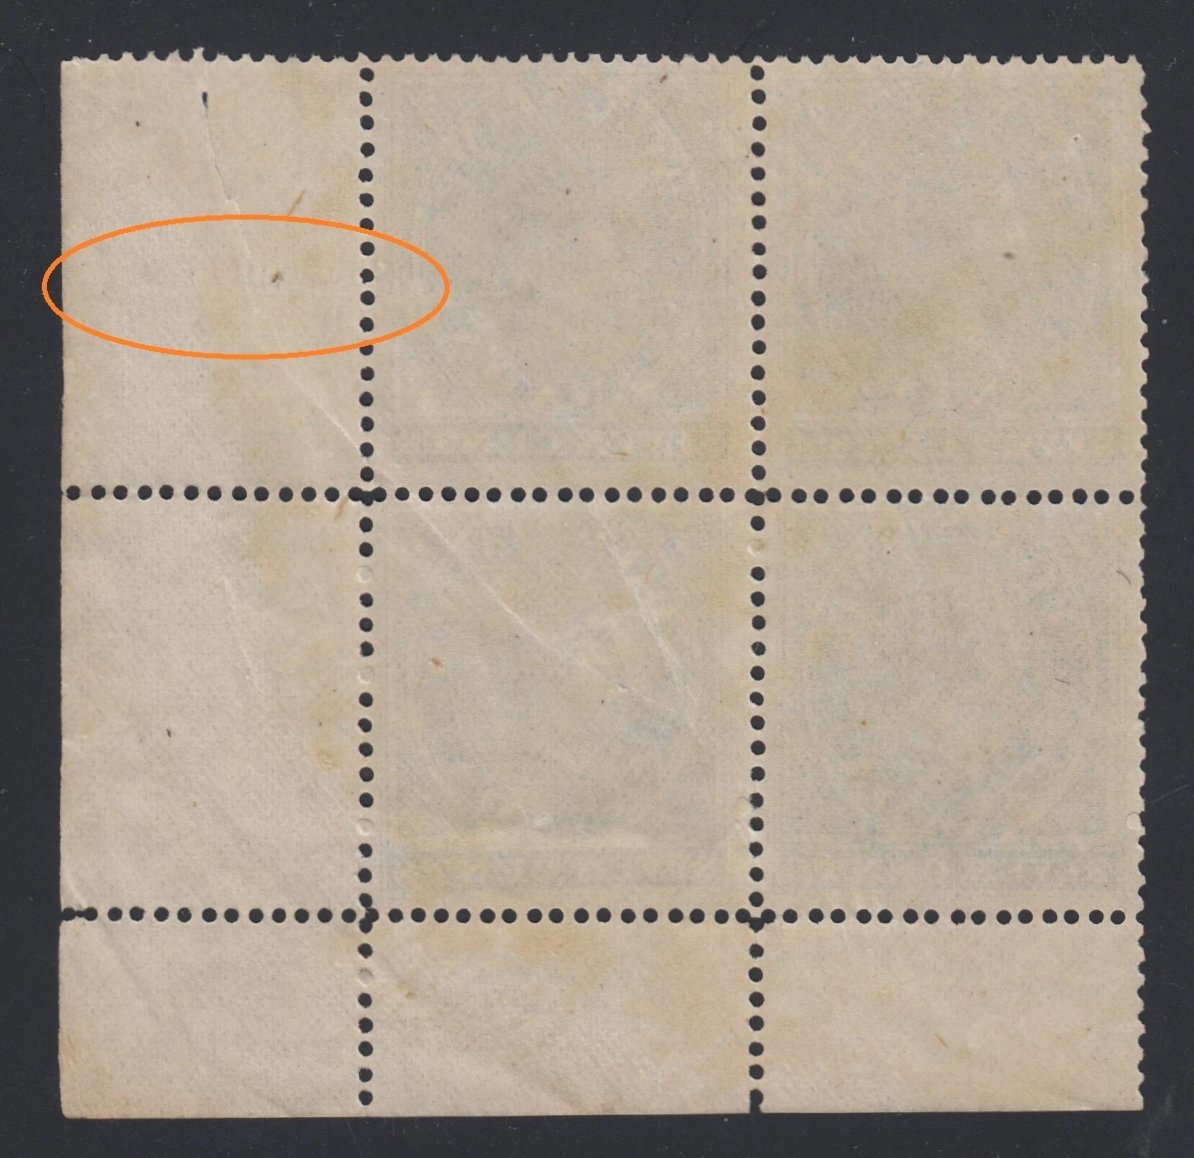 0007FB2110 - FB7 - Mint Block, Unlisted Stitch Watermark